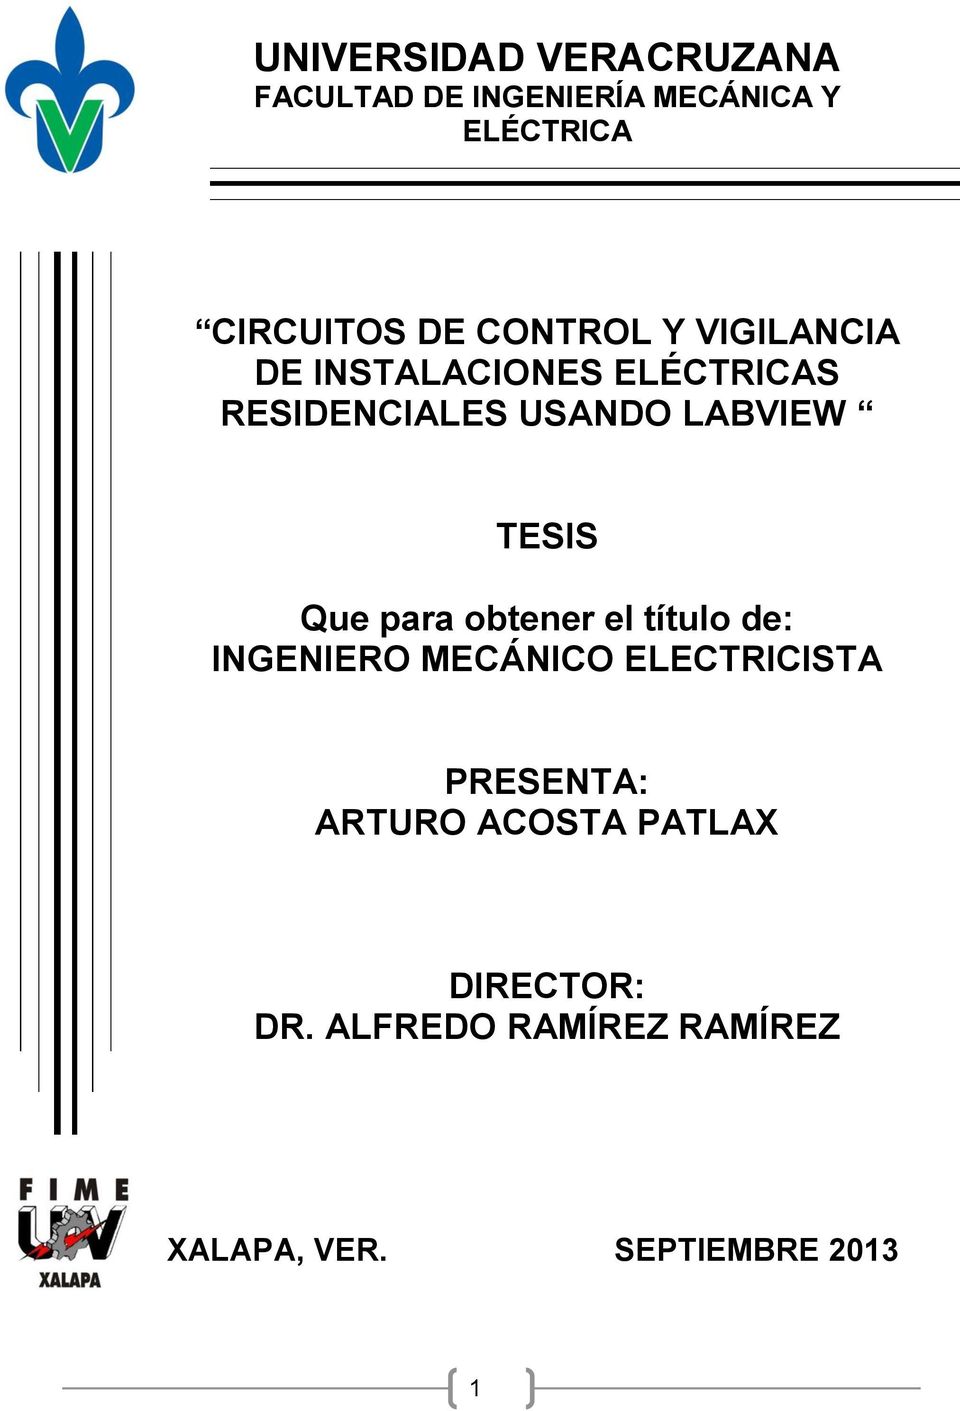 TESIS Que para obtener el título de: INGENIERO MECÁNICO ELECTRICISTA PRESENTA: